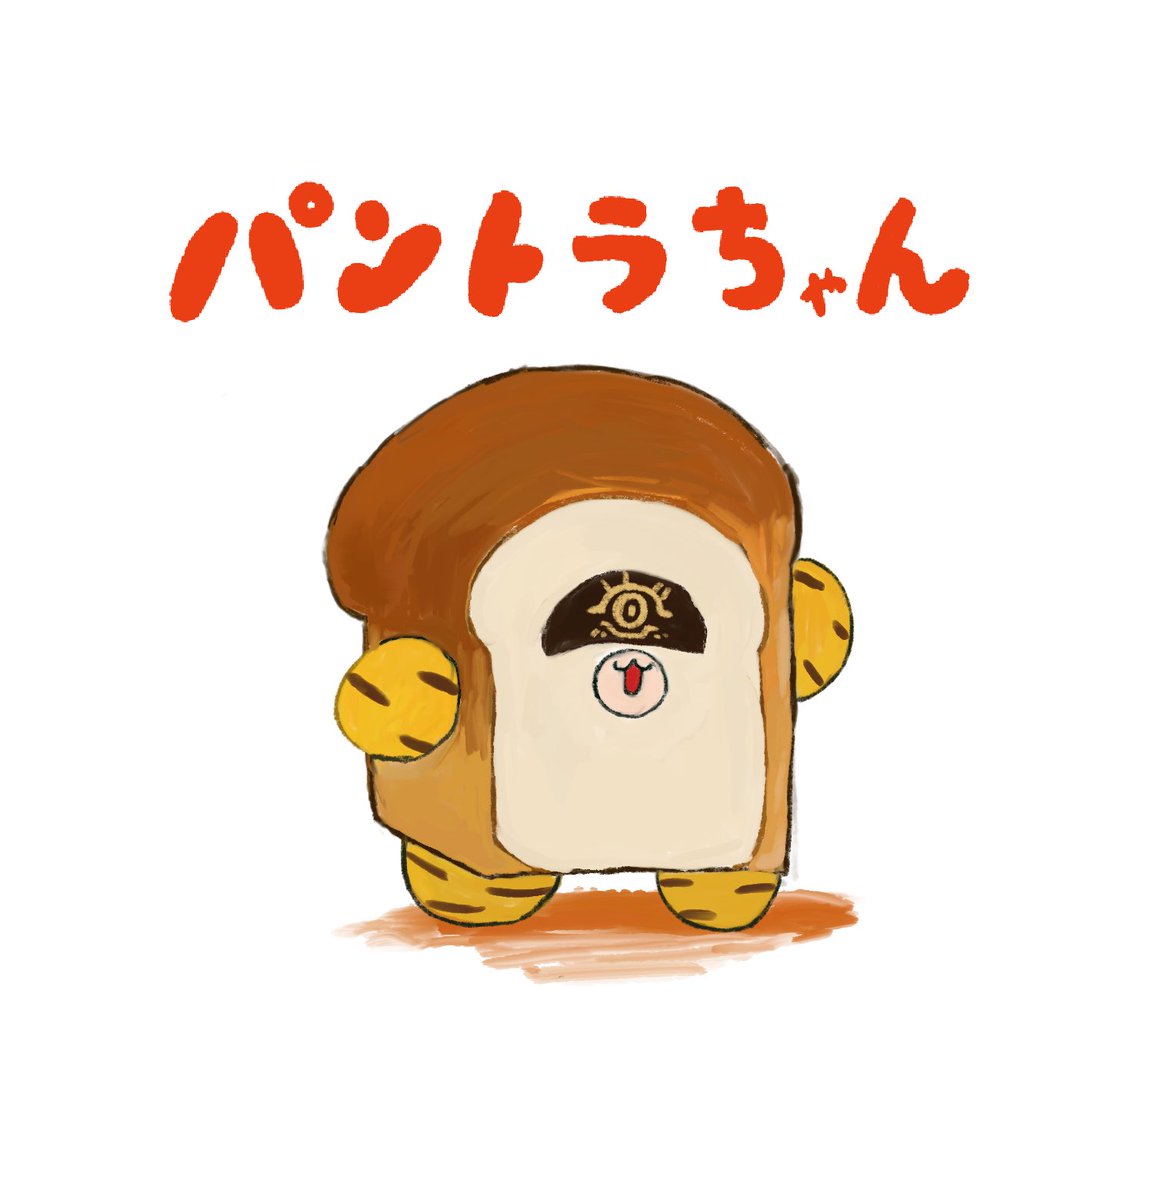 「トラちゃんはどろぼうはしなえ!」|🥞麦茶🥪(Mugi)のイラスト